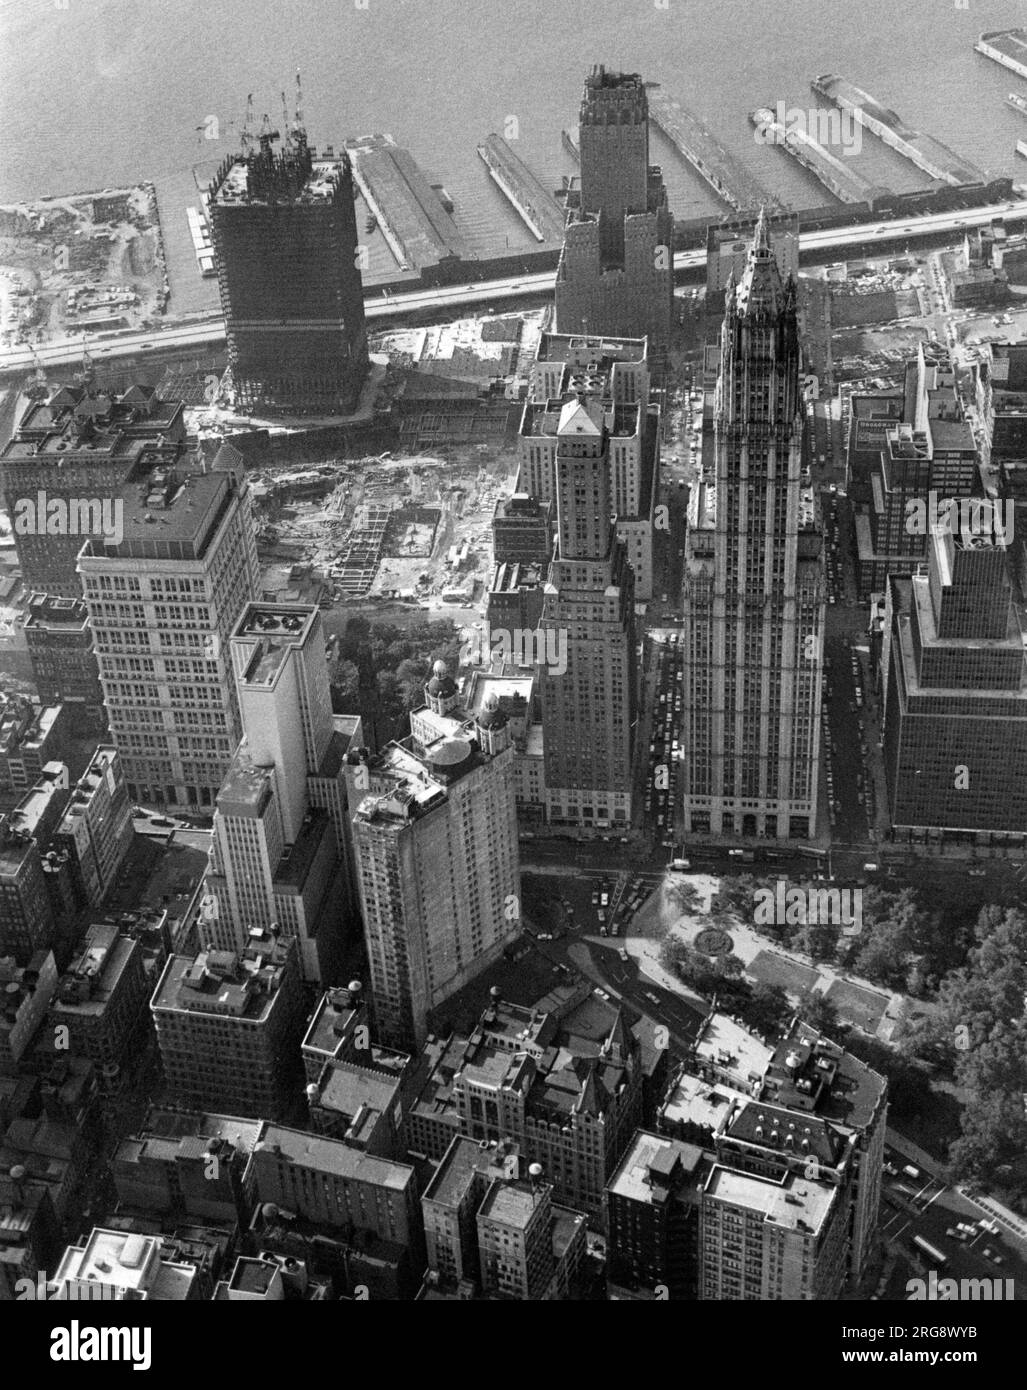 Centro di Manhattan fotografato da un elicottero, mostrando il sito del World Trade Center e la prima delle torri gemelle in costruzione (in alto a sinistra) Foto Stock